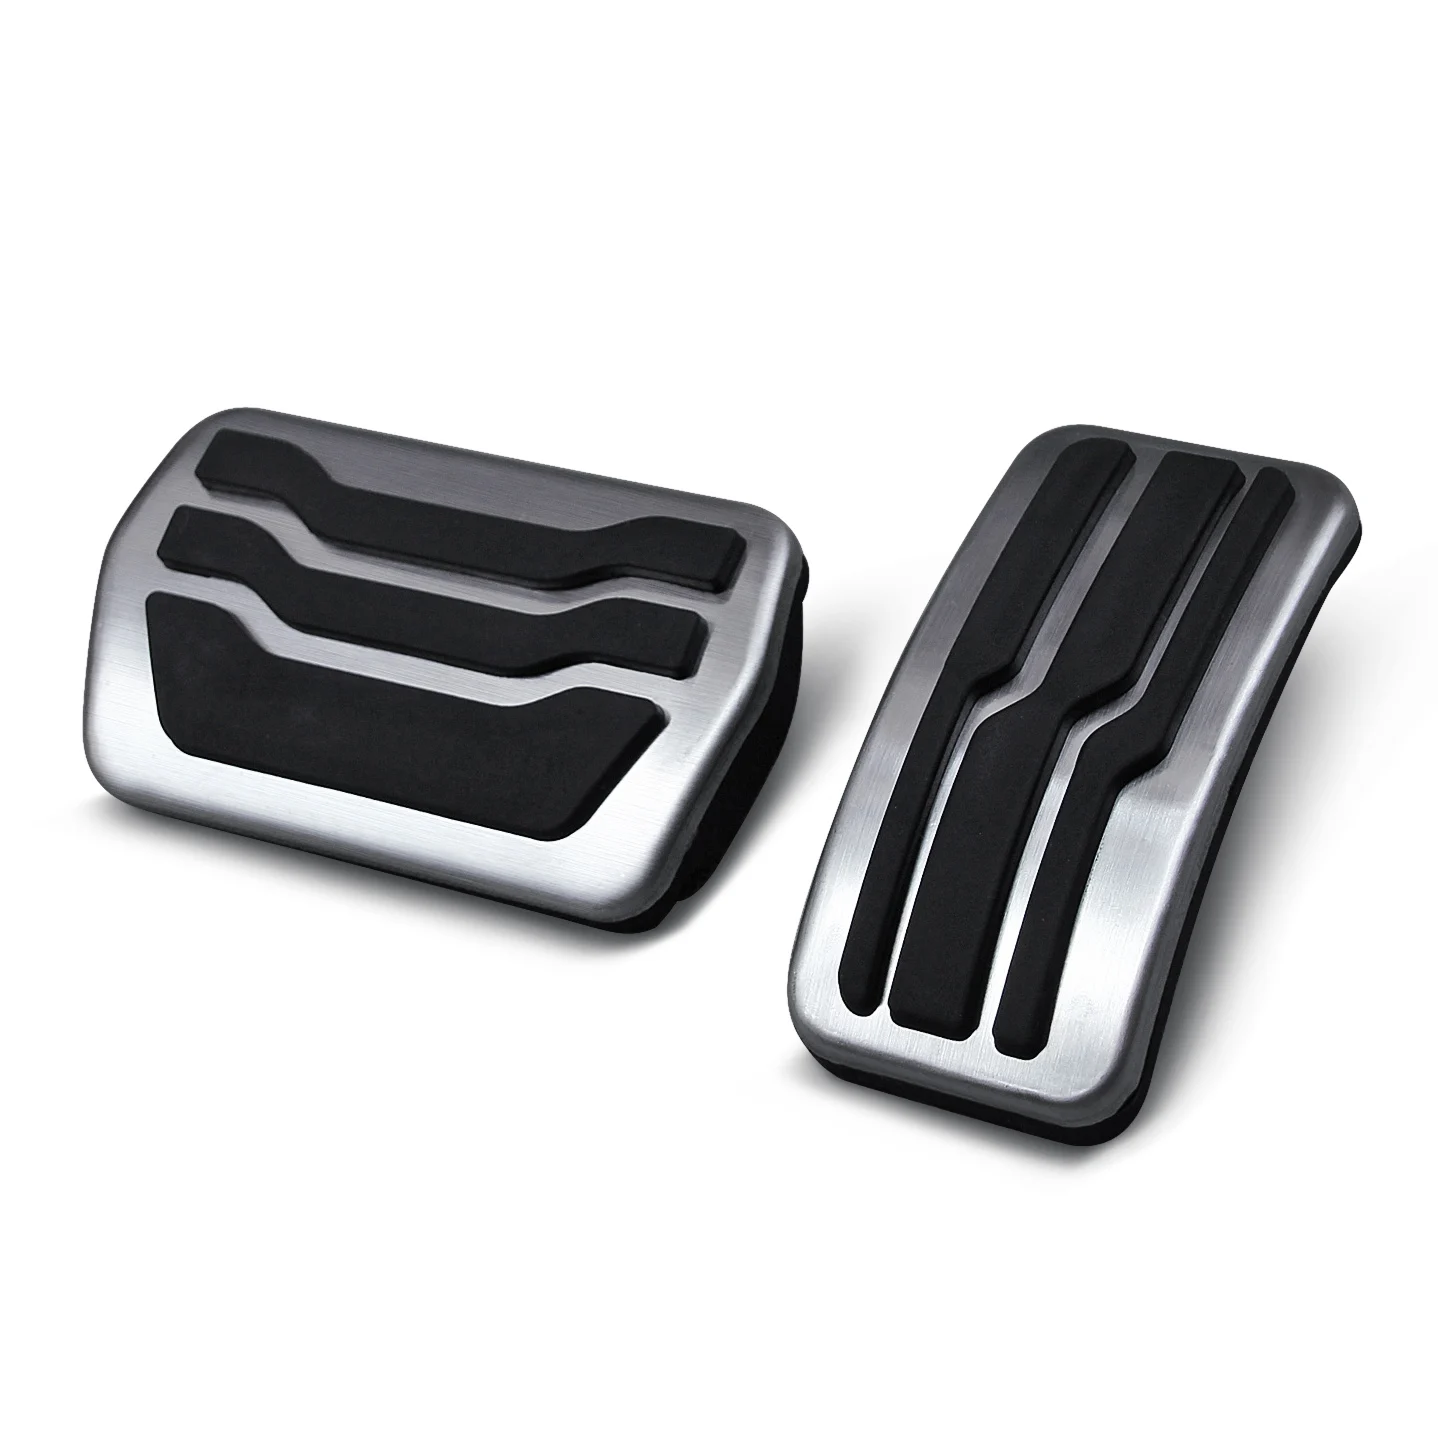 Color Name : 3PCS AT and Rest Pedal de acero inoxidable interior del coche de pedales Resto de Gas Combustible freno cubierta en forma for el Ford C-Max CMax Kuga 2011~2019 Accesorios